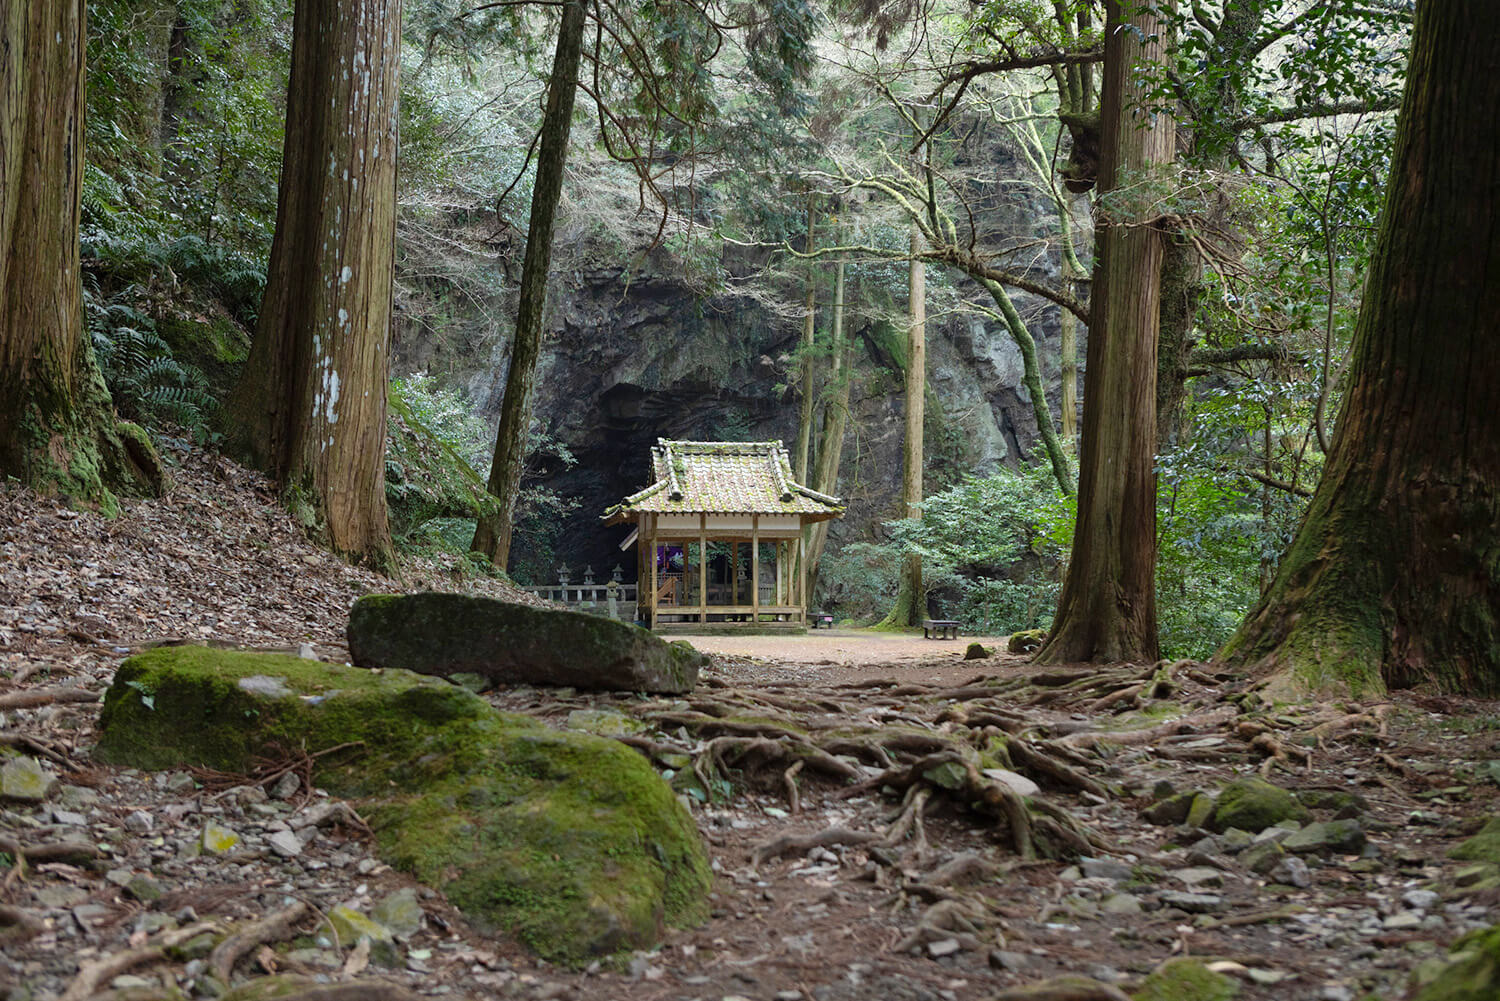 一の鳥居から、静寂に包まれた森の参道を約300m進むと、大きな岩が出現。正面の建物の奥に本殿がある